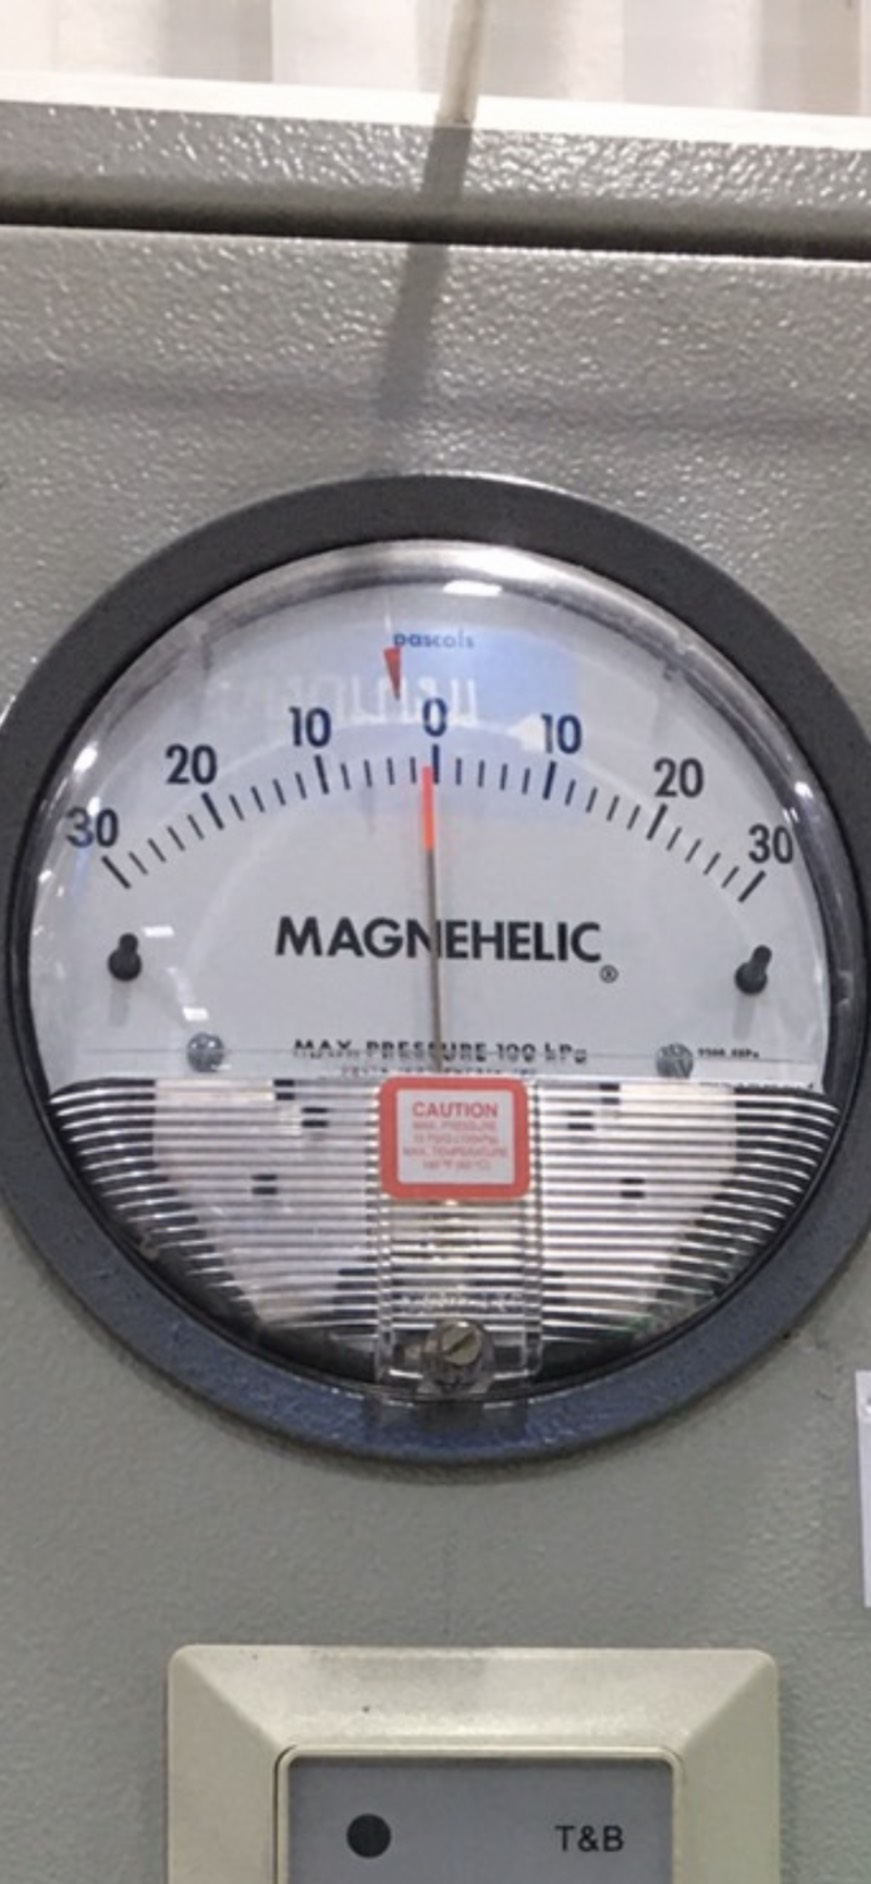 จำหน่ายเกจวัดแรงดัน เครื่องมือวัดความดัน Pressure Gage สำหรับใช้ในงานอุตสาหกรรม ปิโตรเลียม เคมี และ น้ำ  รูปที่ 1